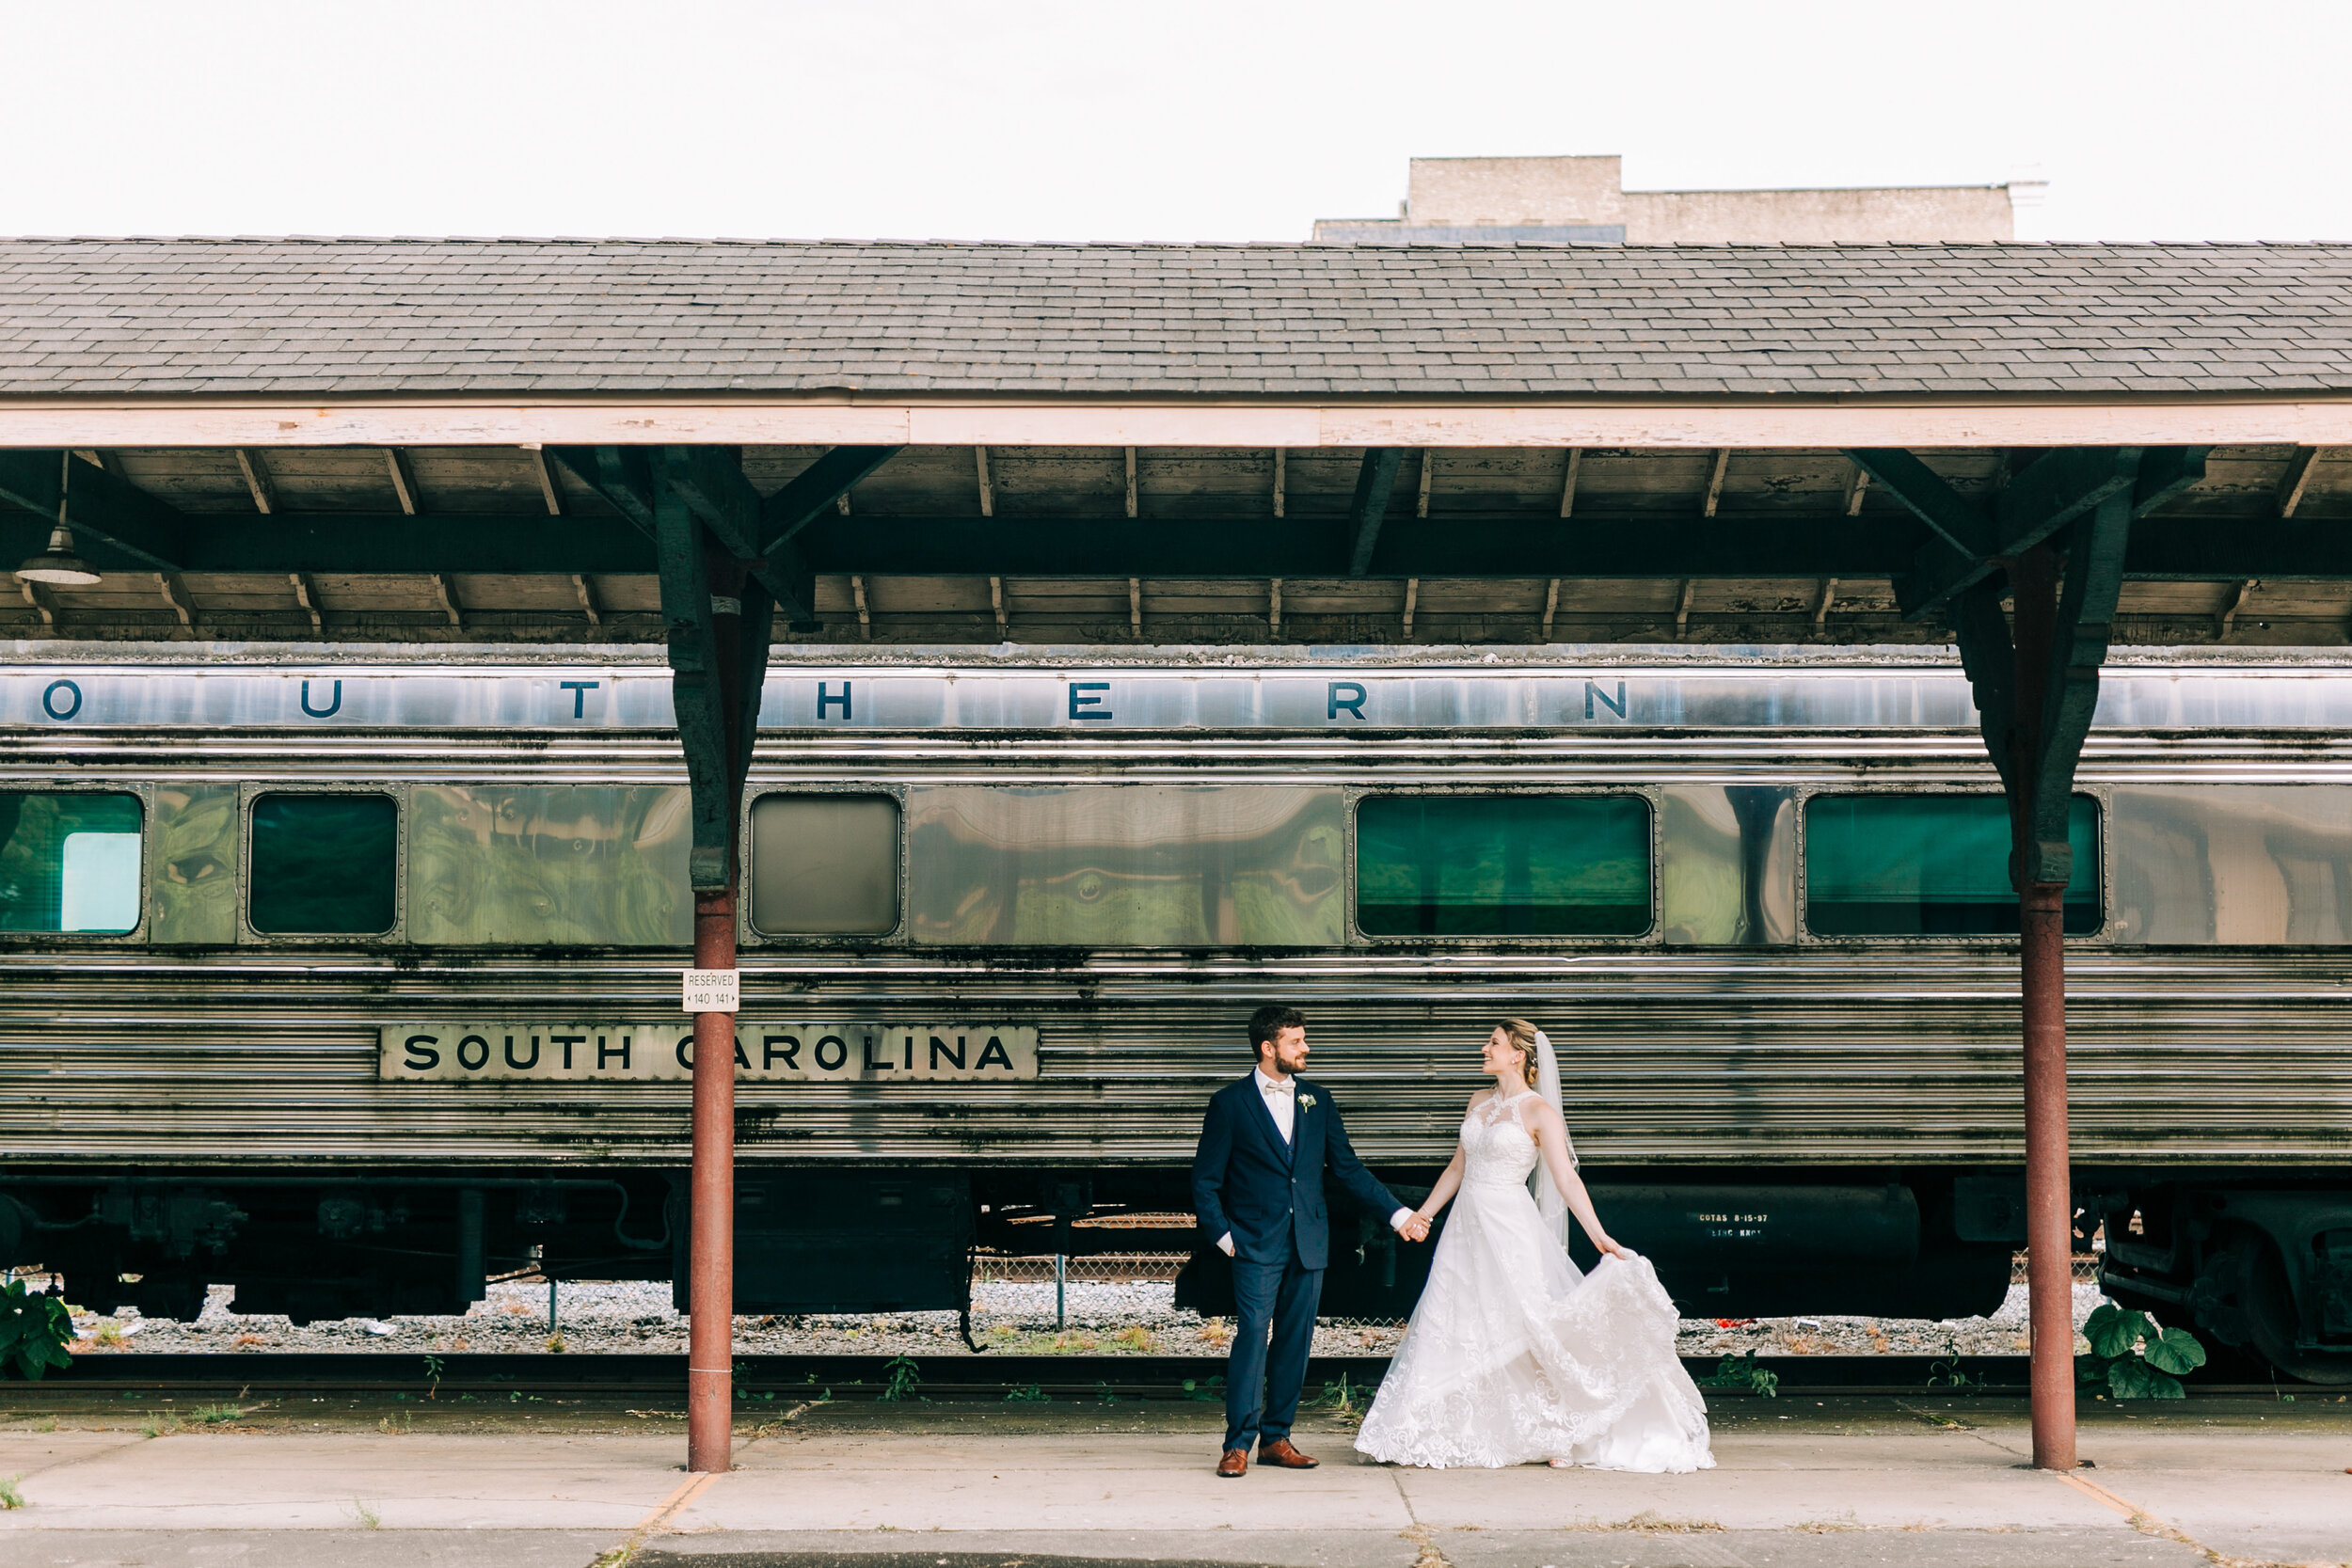   An Elegant Southern Railway Station Wedding